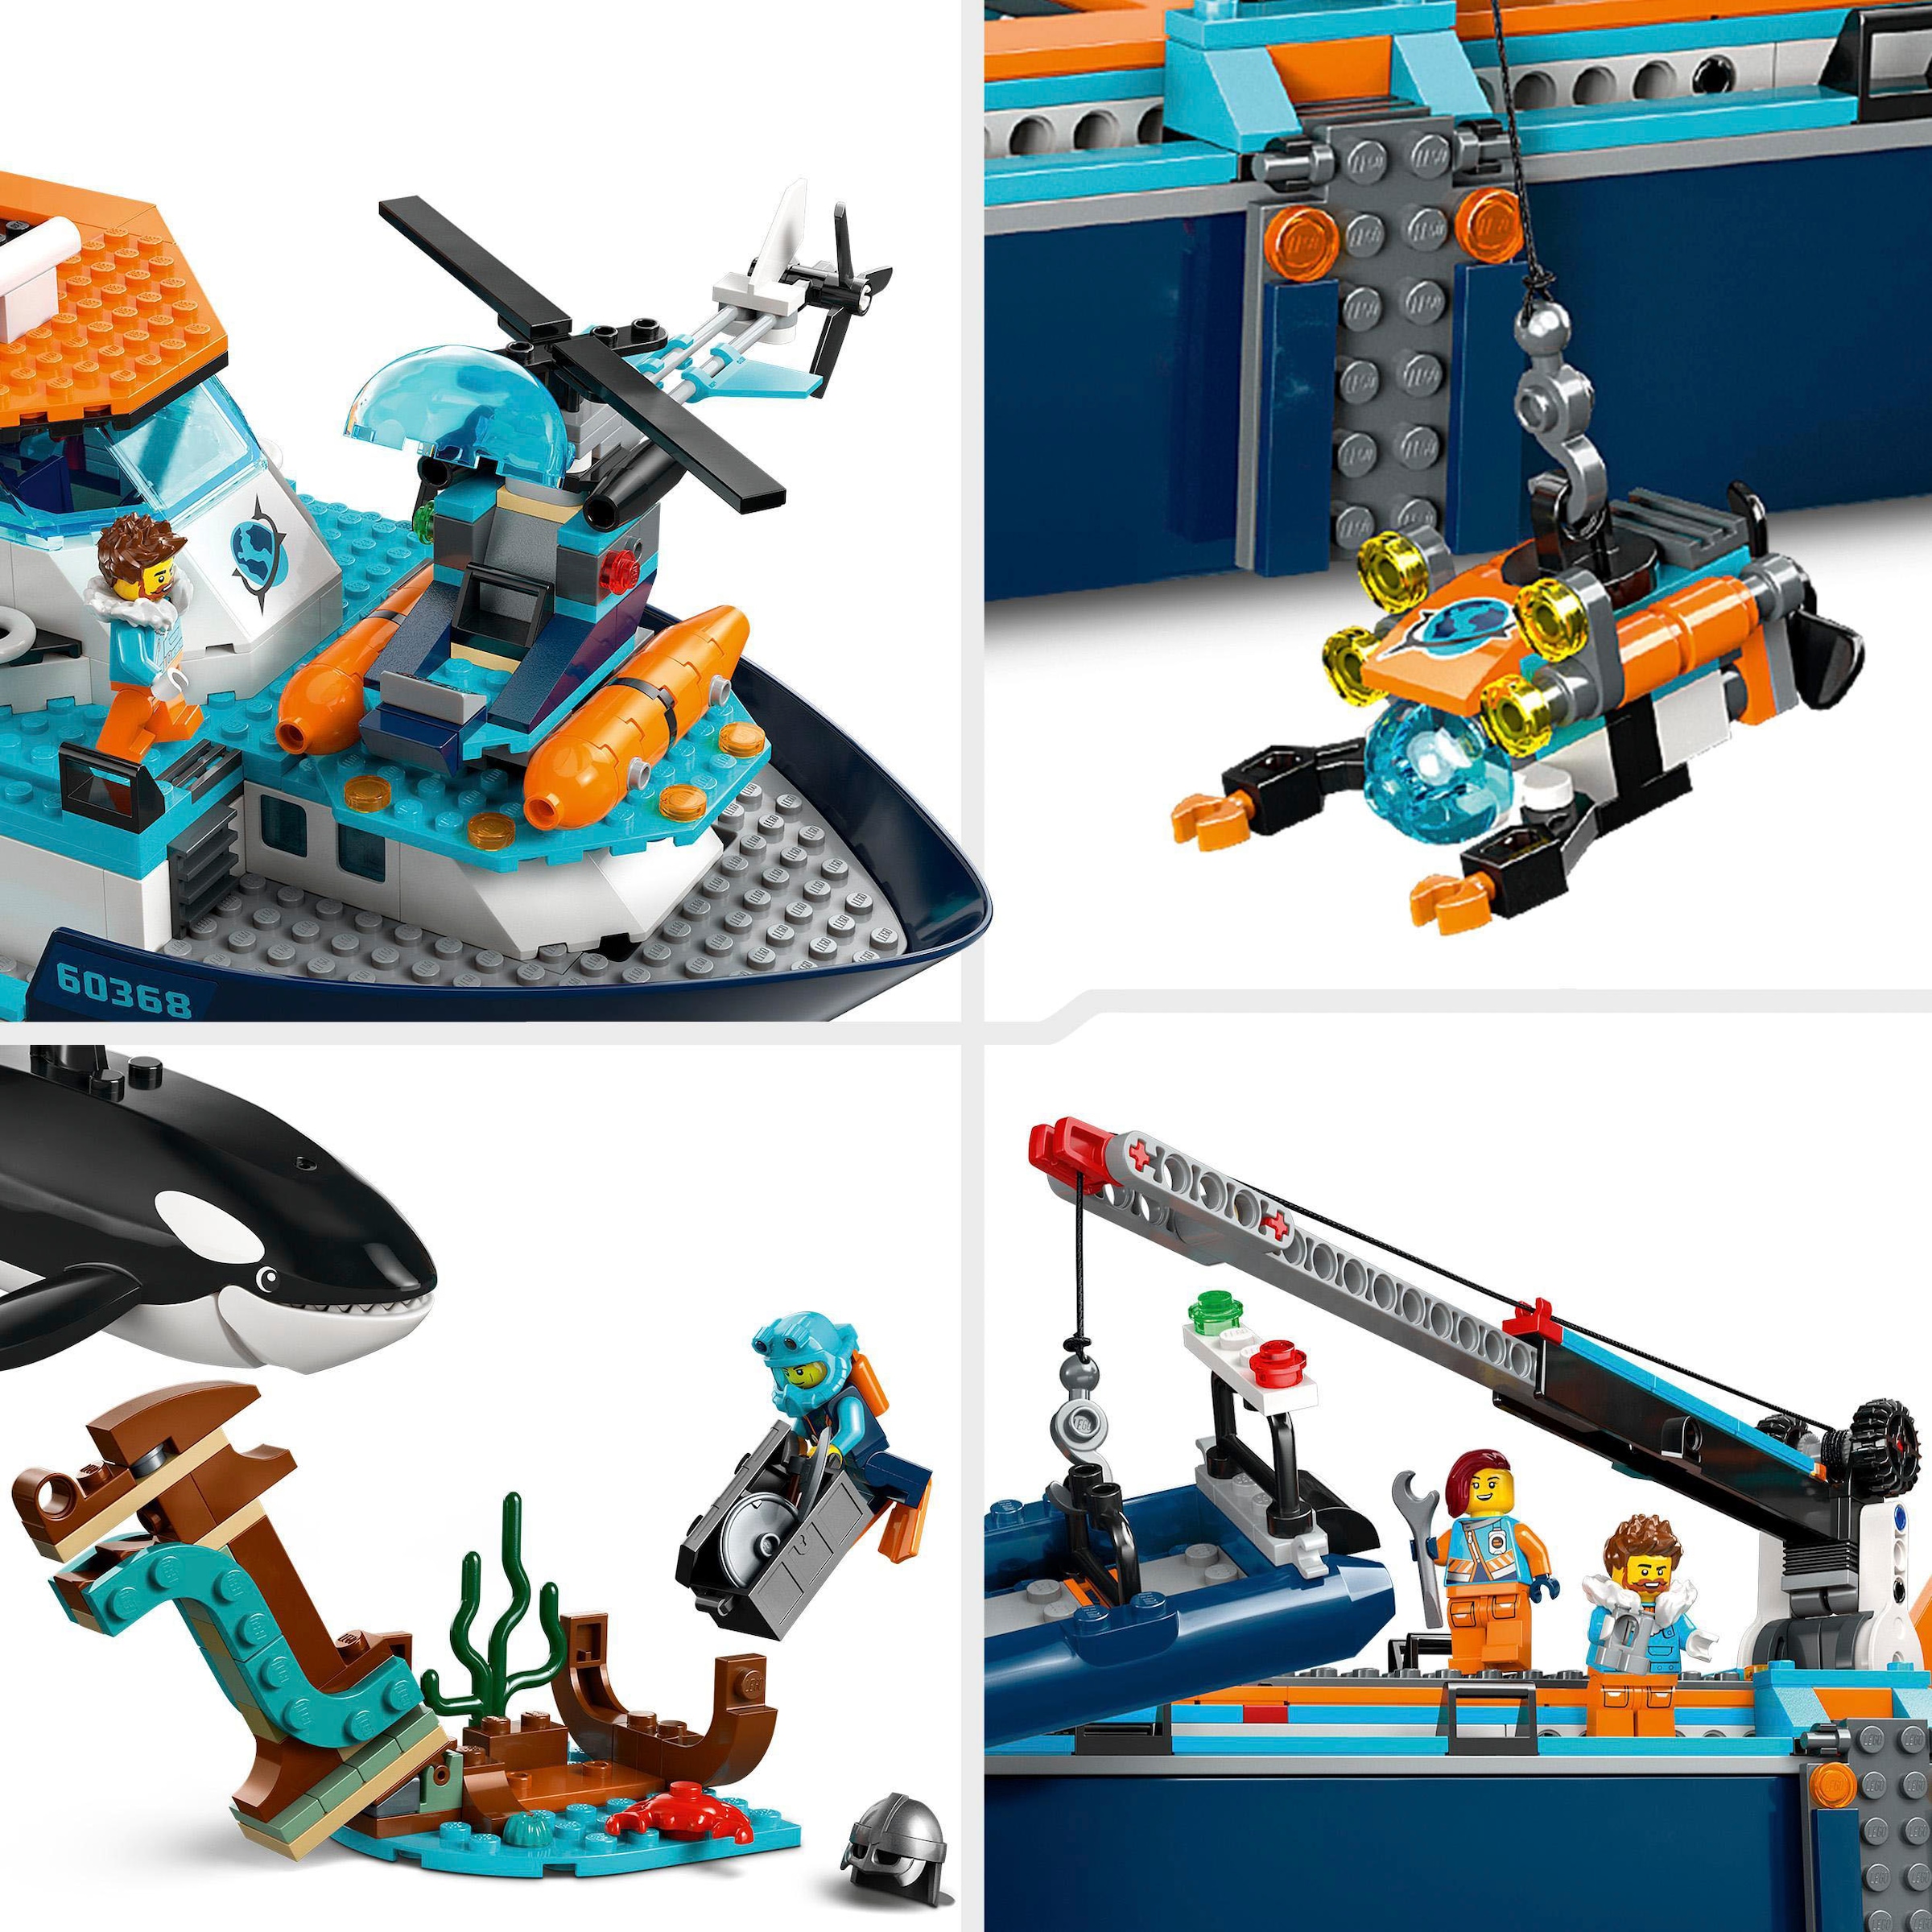 LEGO® Konstruktionsspielsteine »Arktis-Forschungsschiff (60368), LEGO® City«, (815 St.), Made in Europe